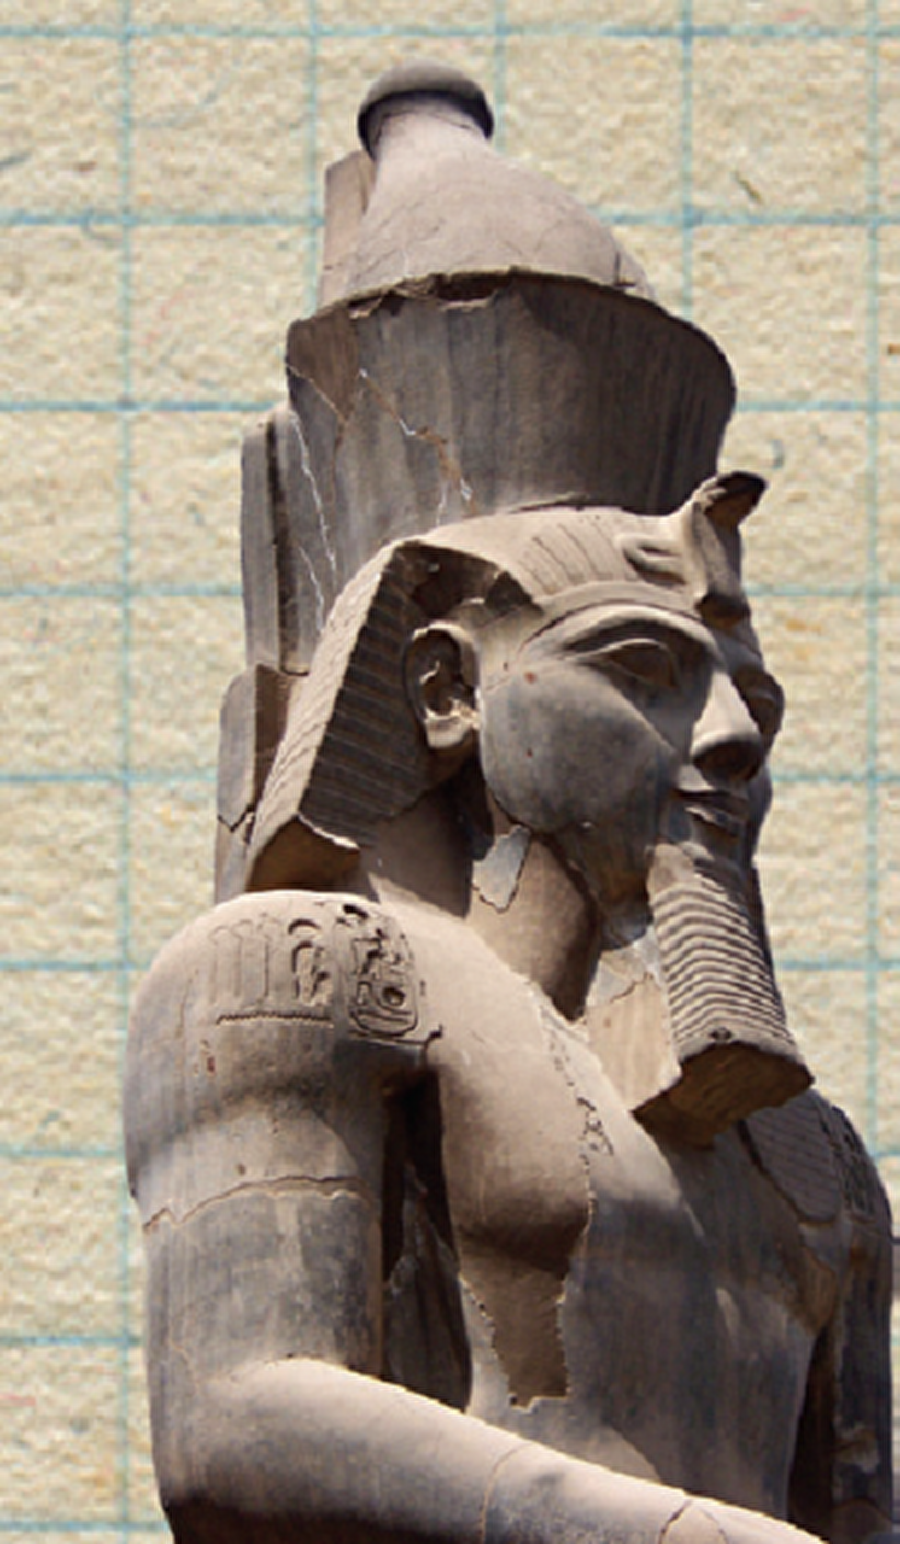 İlk Yeşilay Mısır'da mı kurulmuştu?
Kayıtlara göre M.Ö. 1350 yıllarında II. Ramses, Mısırların ayyaşlığıyla mücadele için bir içki düşmanları derneği kurmuştu.